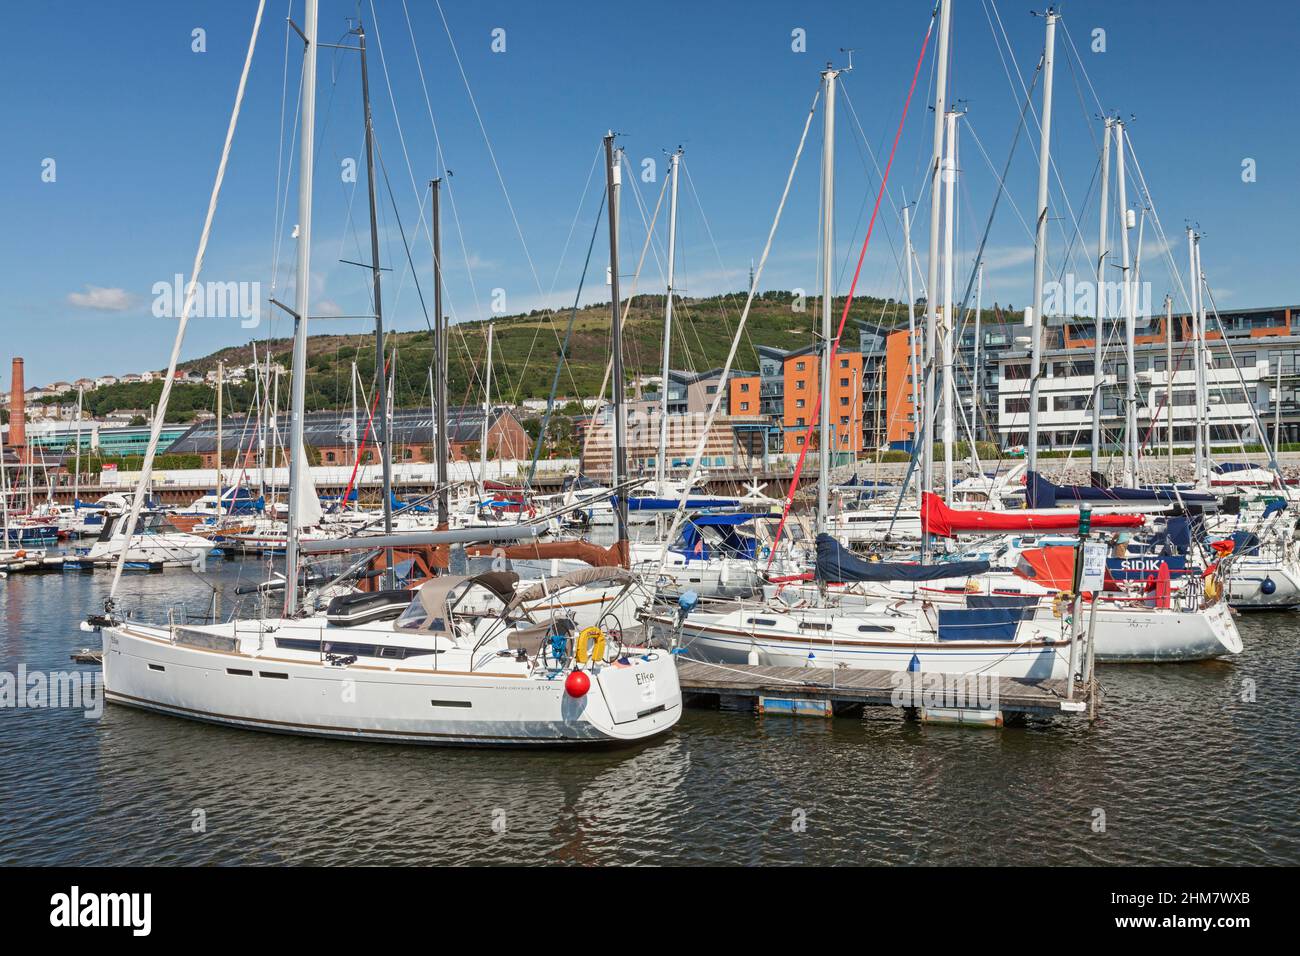 Port de plaisance de Swansea, quartier maritime, Swansea, pays de Galles du Sud, Royaume-Uni Banque D'Images